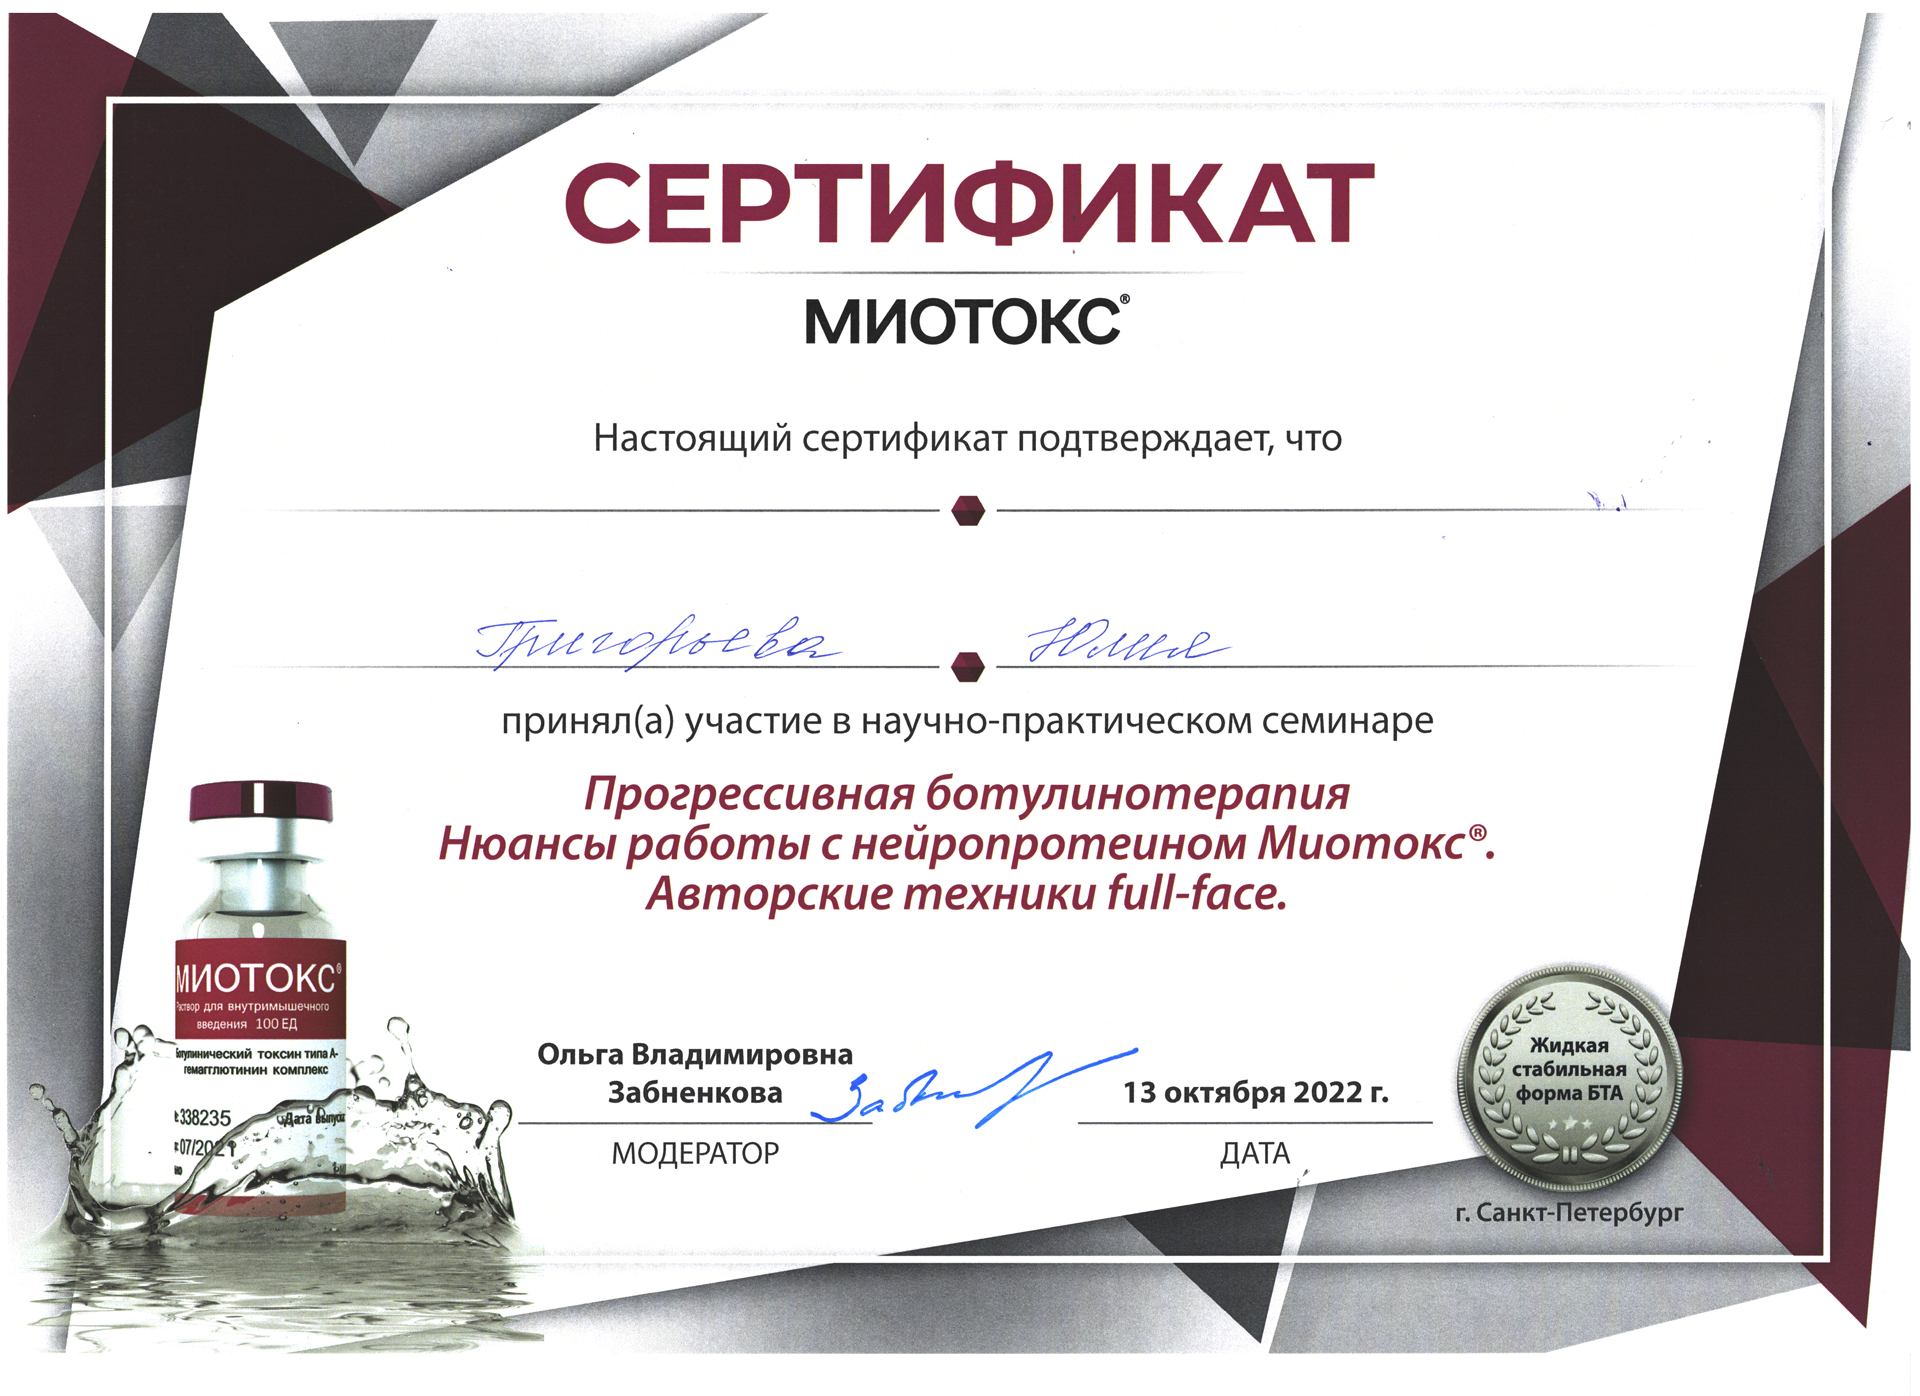 Сертификат — Семинар «Прогрессивная ботулинотерапия». Григорьева Юлия Ростиславовна